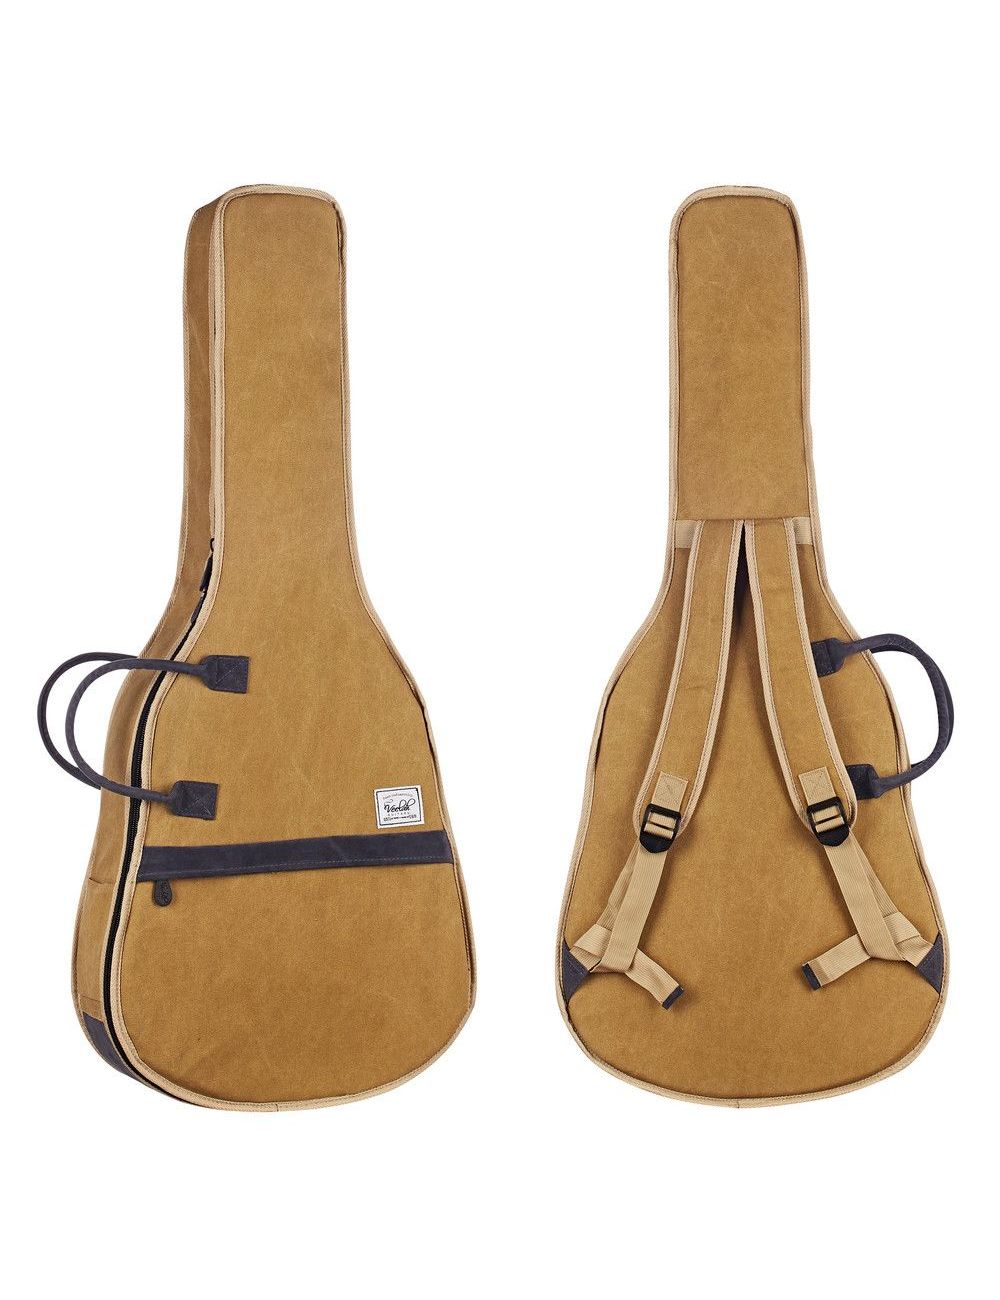 Veelah Brown CGB15-BR Classical guitar gig bag 1502453 Classical and flamenco